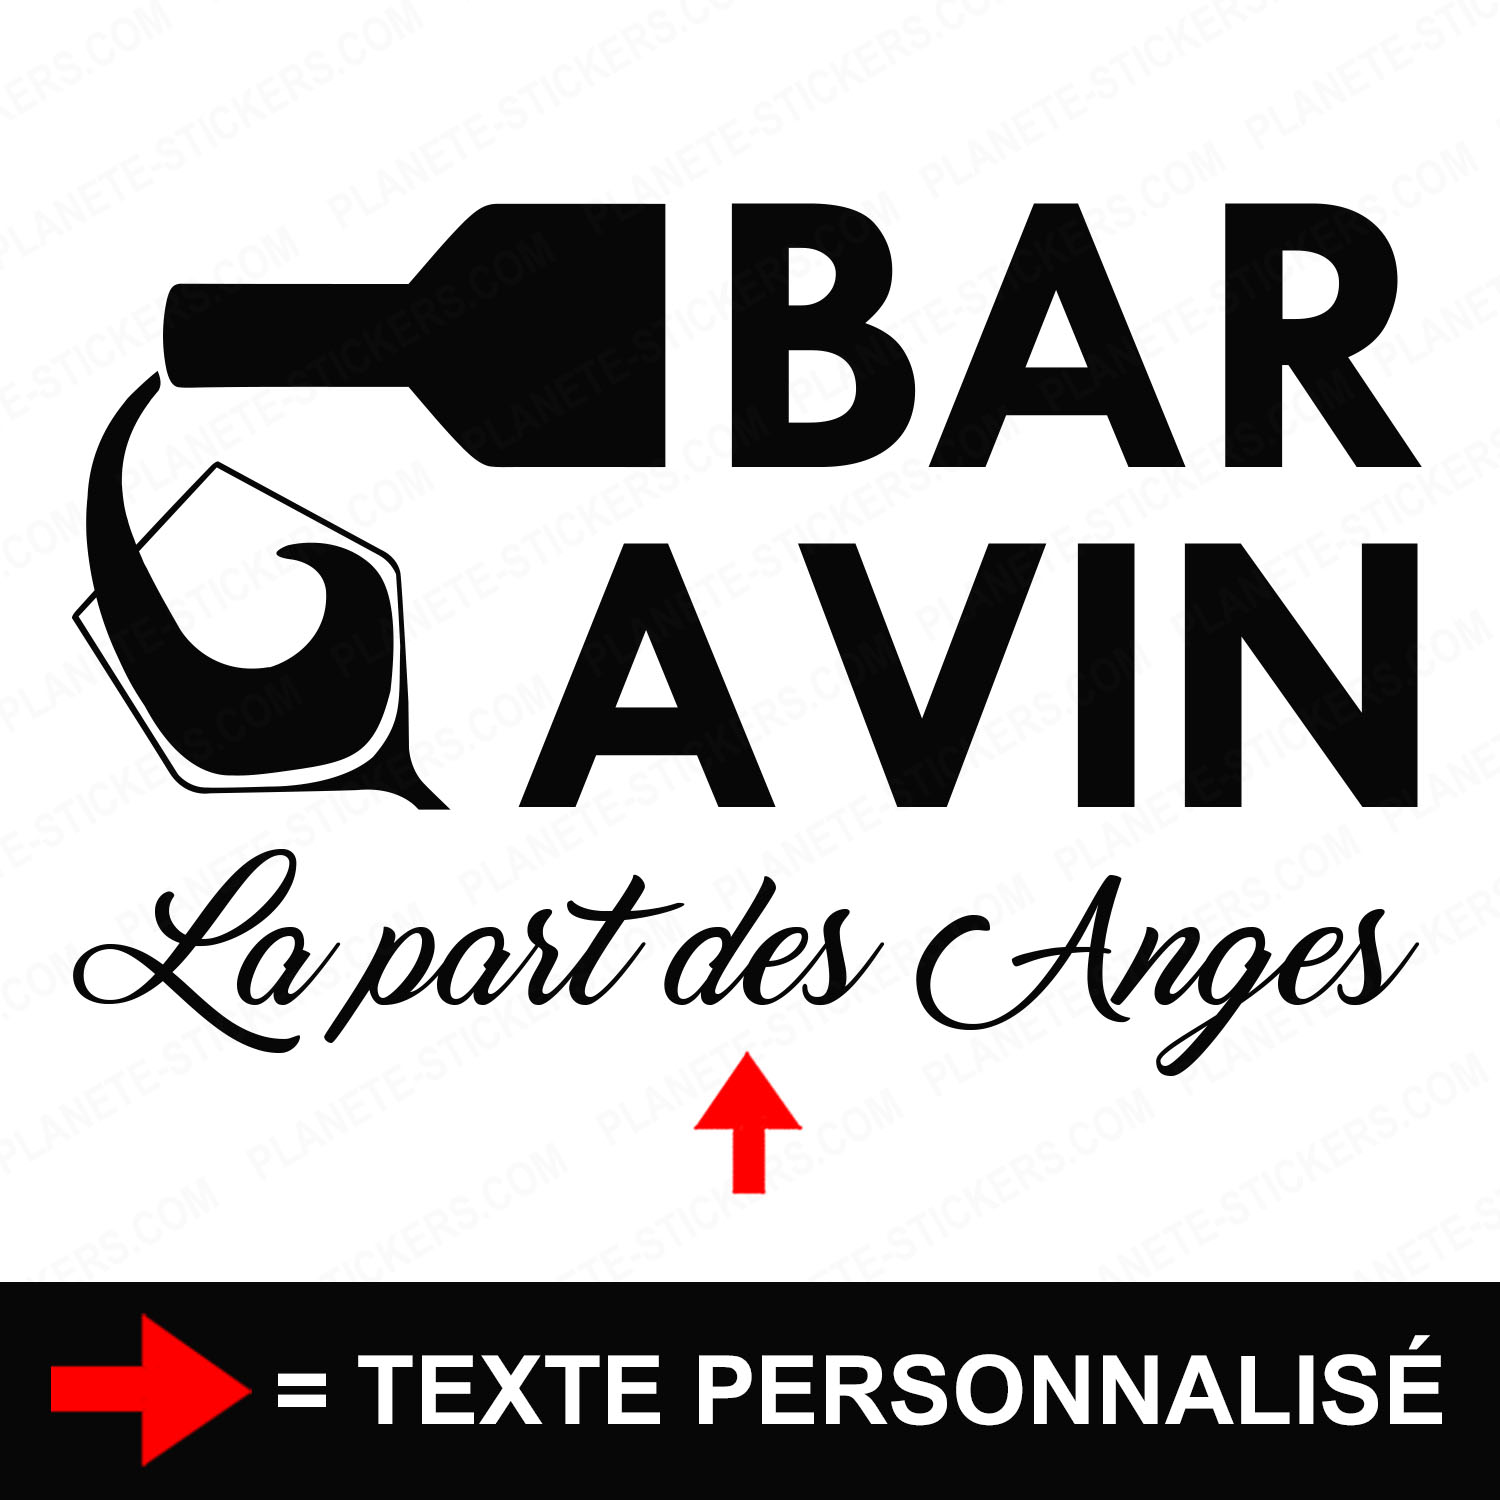 ref4baravinvitrine-stickers-bar-à-vin-vitrine-restaurant-sticker-bar-a-vins-vitrophanie-personnalisé-autocollant-pro-restaurateur-vitre-resto-logo-verre-de-vin-2